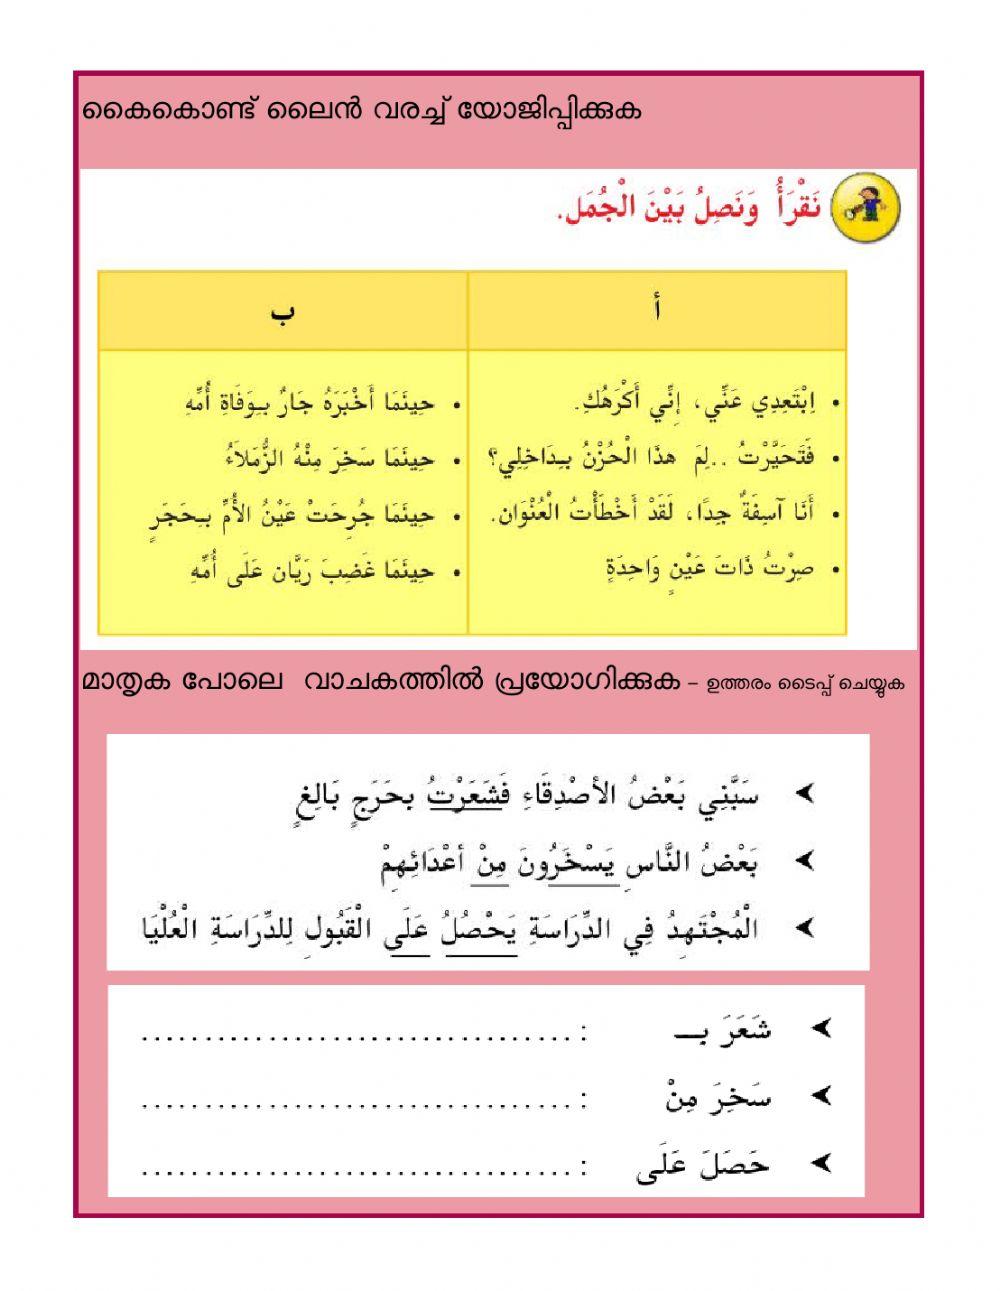 Class 9 worksheet 3